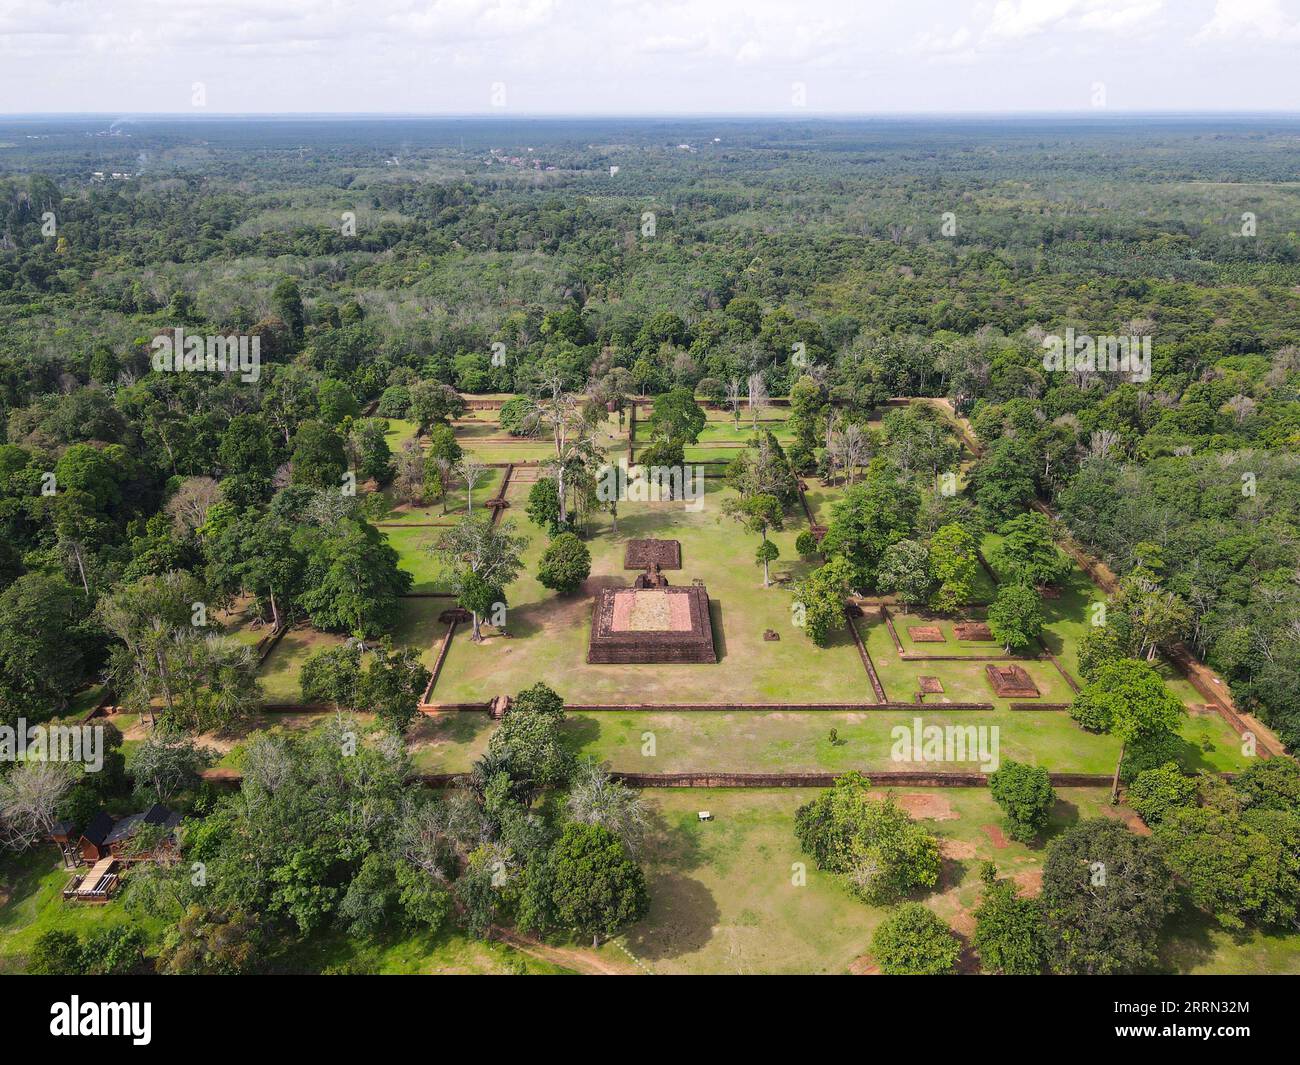 221203 -- JAMBI, 3 dicembre 2022 -- questa foto aerea scattata il 1 dicembre 2022 mostra le rovine del Tempio di Kedaton nel complesso del Tempio di Muarajambi a Maro Sebo, Jambi, Indonesia. Il complesso del Tempio di Muarajambi è un complesso di diversi templi situati a Maro Sebo, nella provincia di Jambi. In quest'area di circa 3.000 ettari ci sono circa 11 templi buddisti e circa 80 tumuli di terra che si pensa abbiano anche al suo interno antiche strutture edilizie. INDONESIA-JAMBI-MUARAJAMBI COMPLESSO DI TEMPLI XuxQin PUBLICATIONxNOTxINxCHN Foto Stock